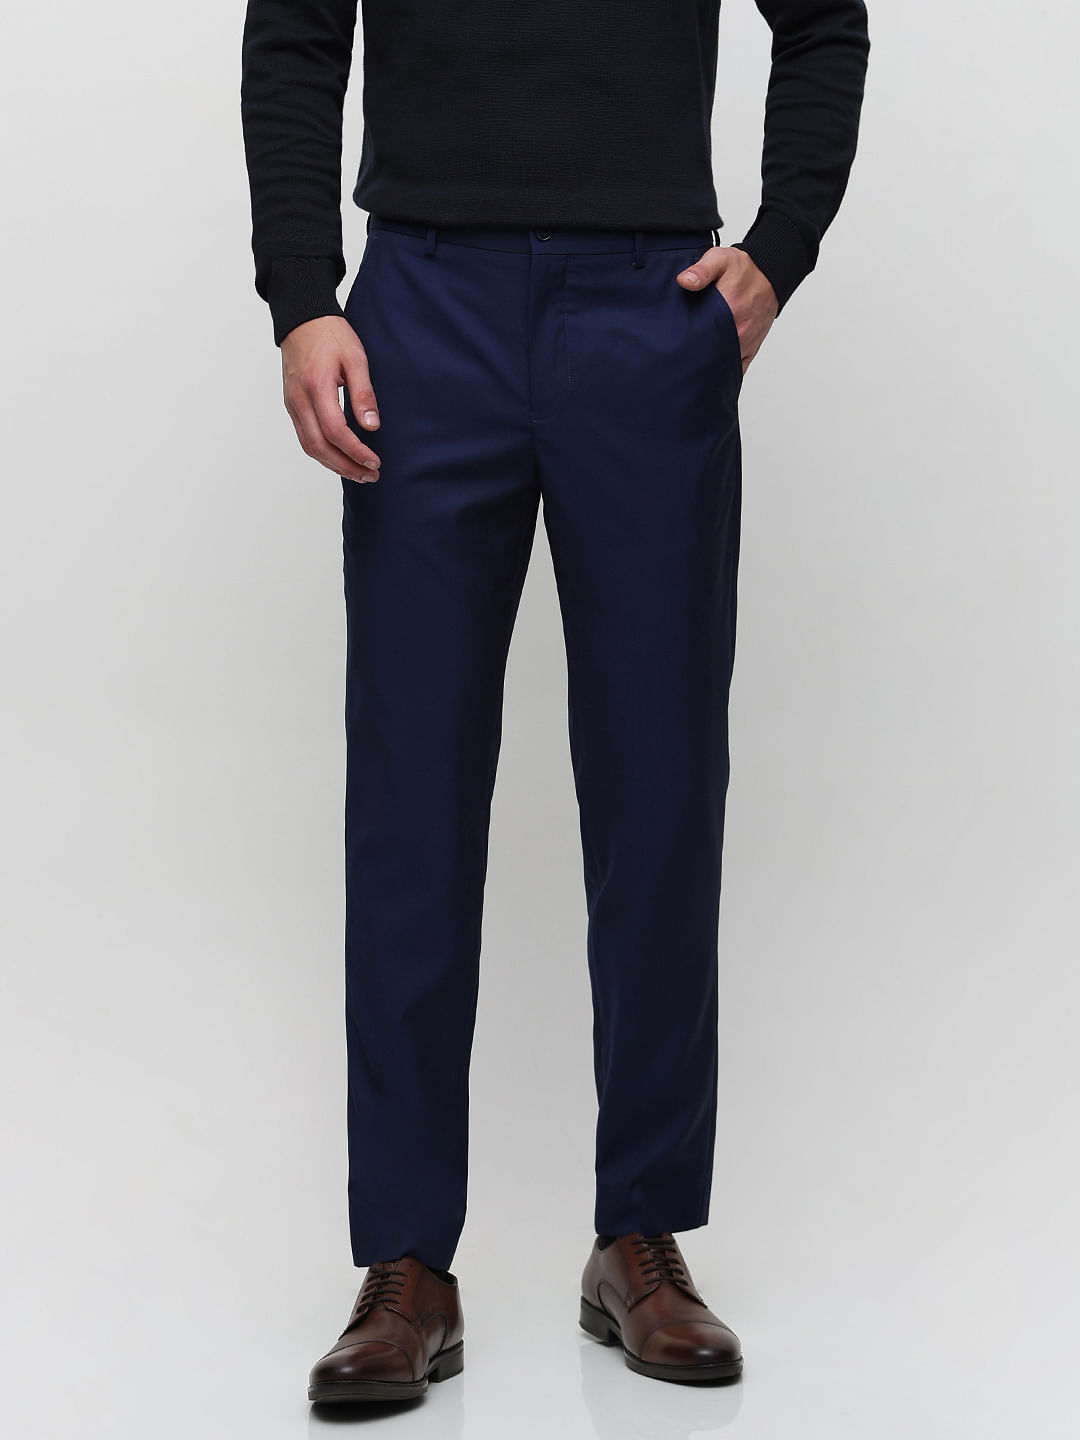 2022 Fashion Mens Royal Blue Suit Pants Pure Color Business Occupation Slim  Fit Dress Pants Social